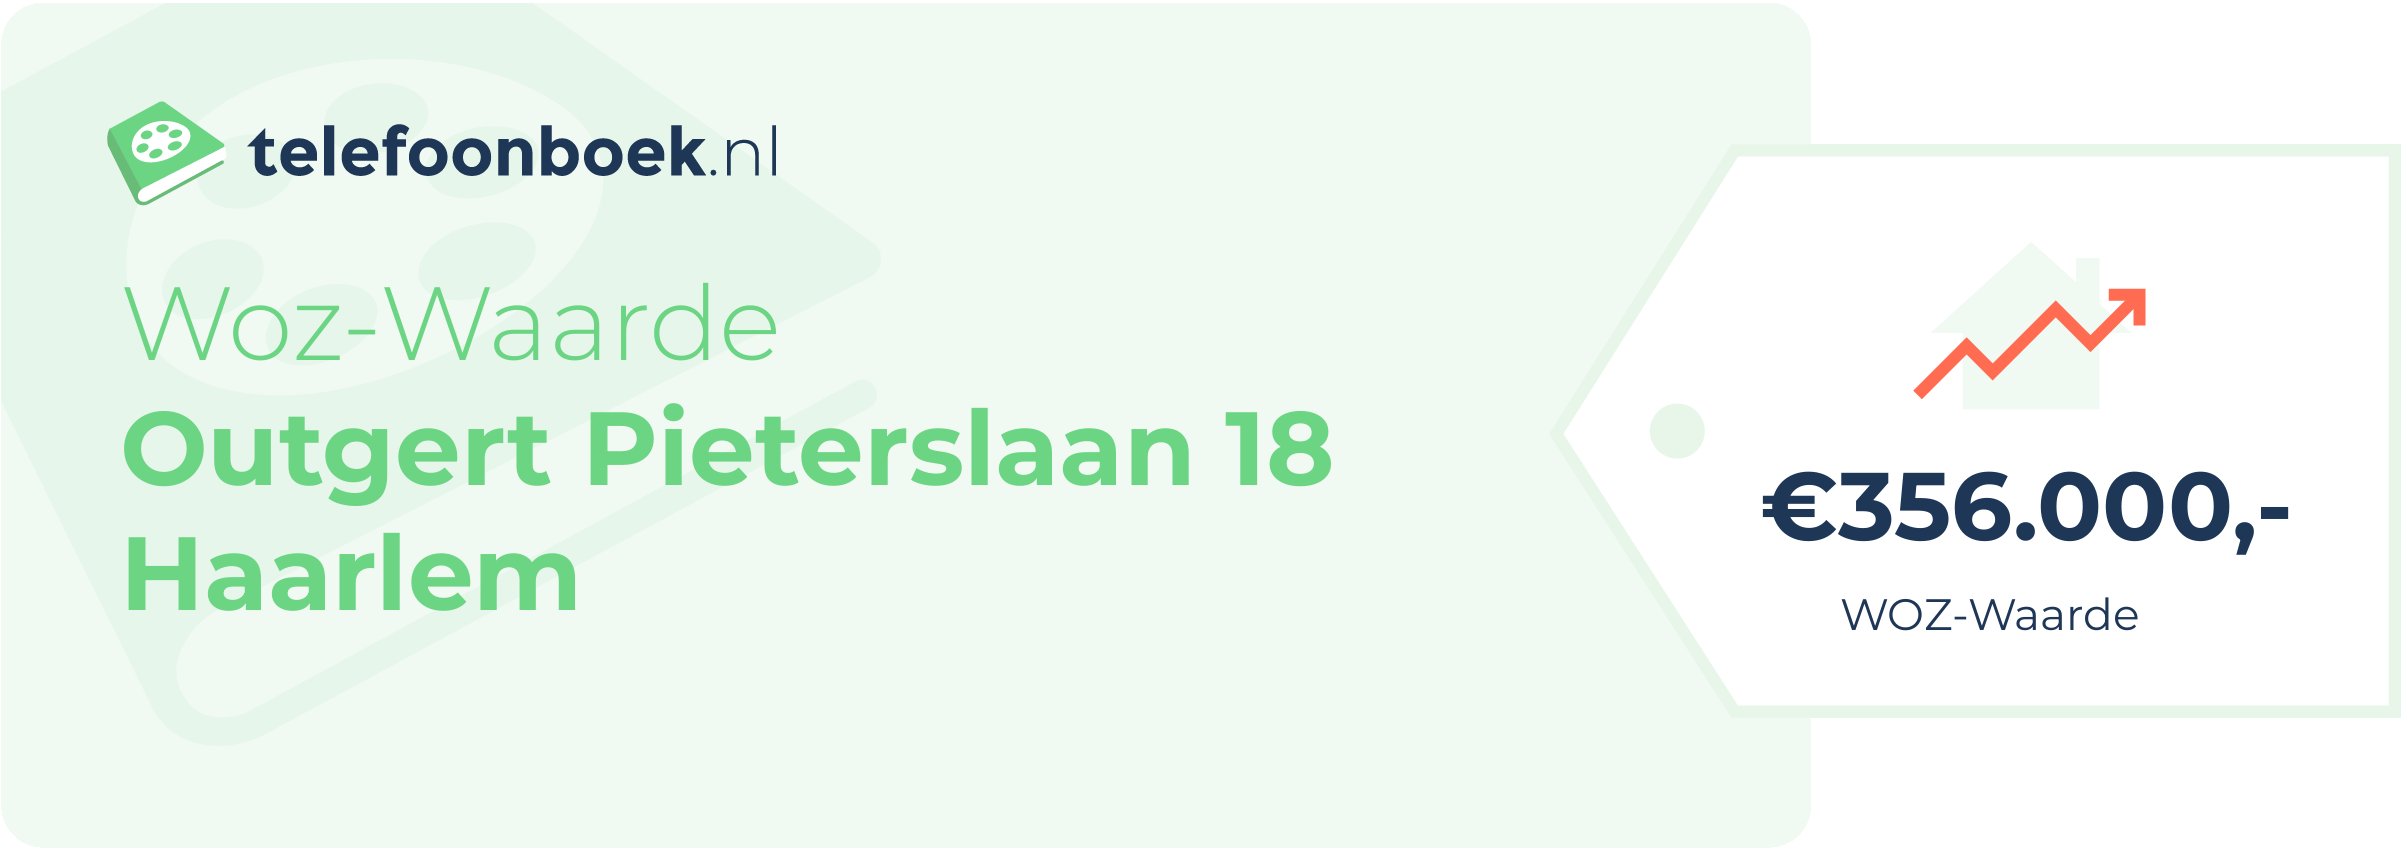 WOZ-waarde Outgert Pieterslaan 18 Haarlem